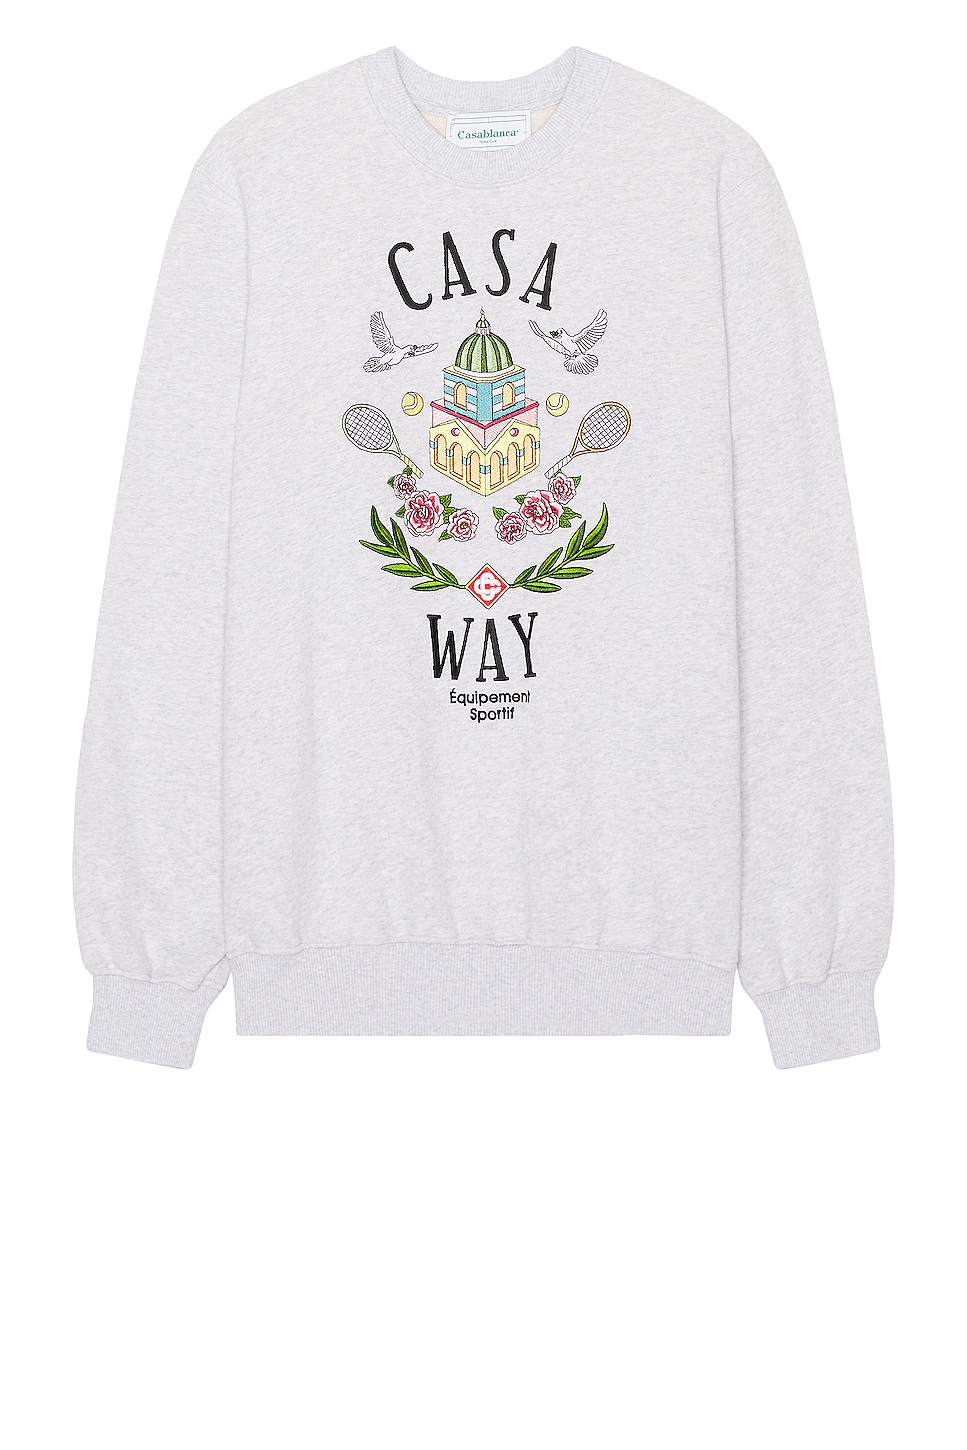 Image 1 of Casablanca Casa Way Sweater in Casa Way